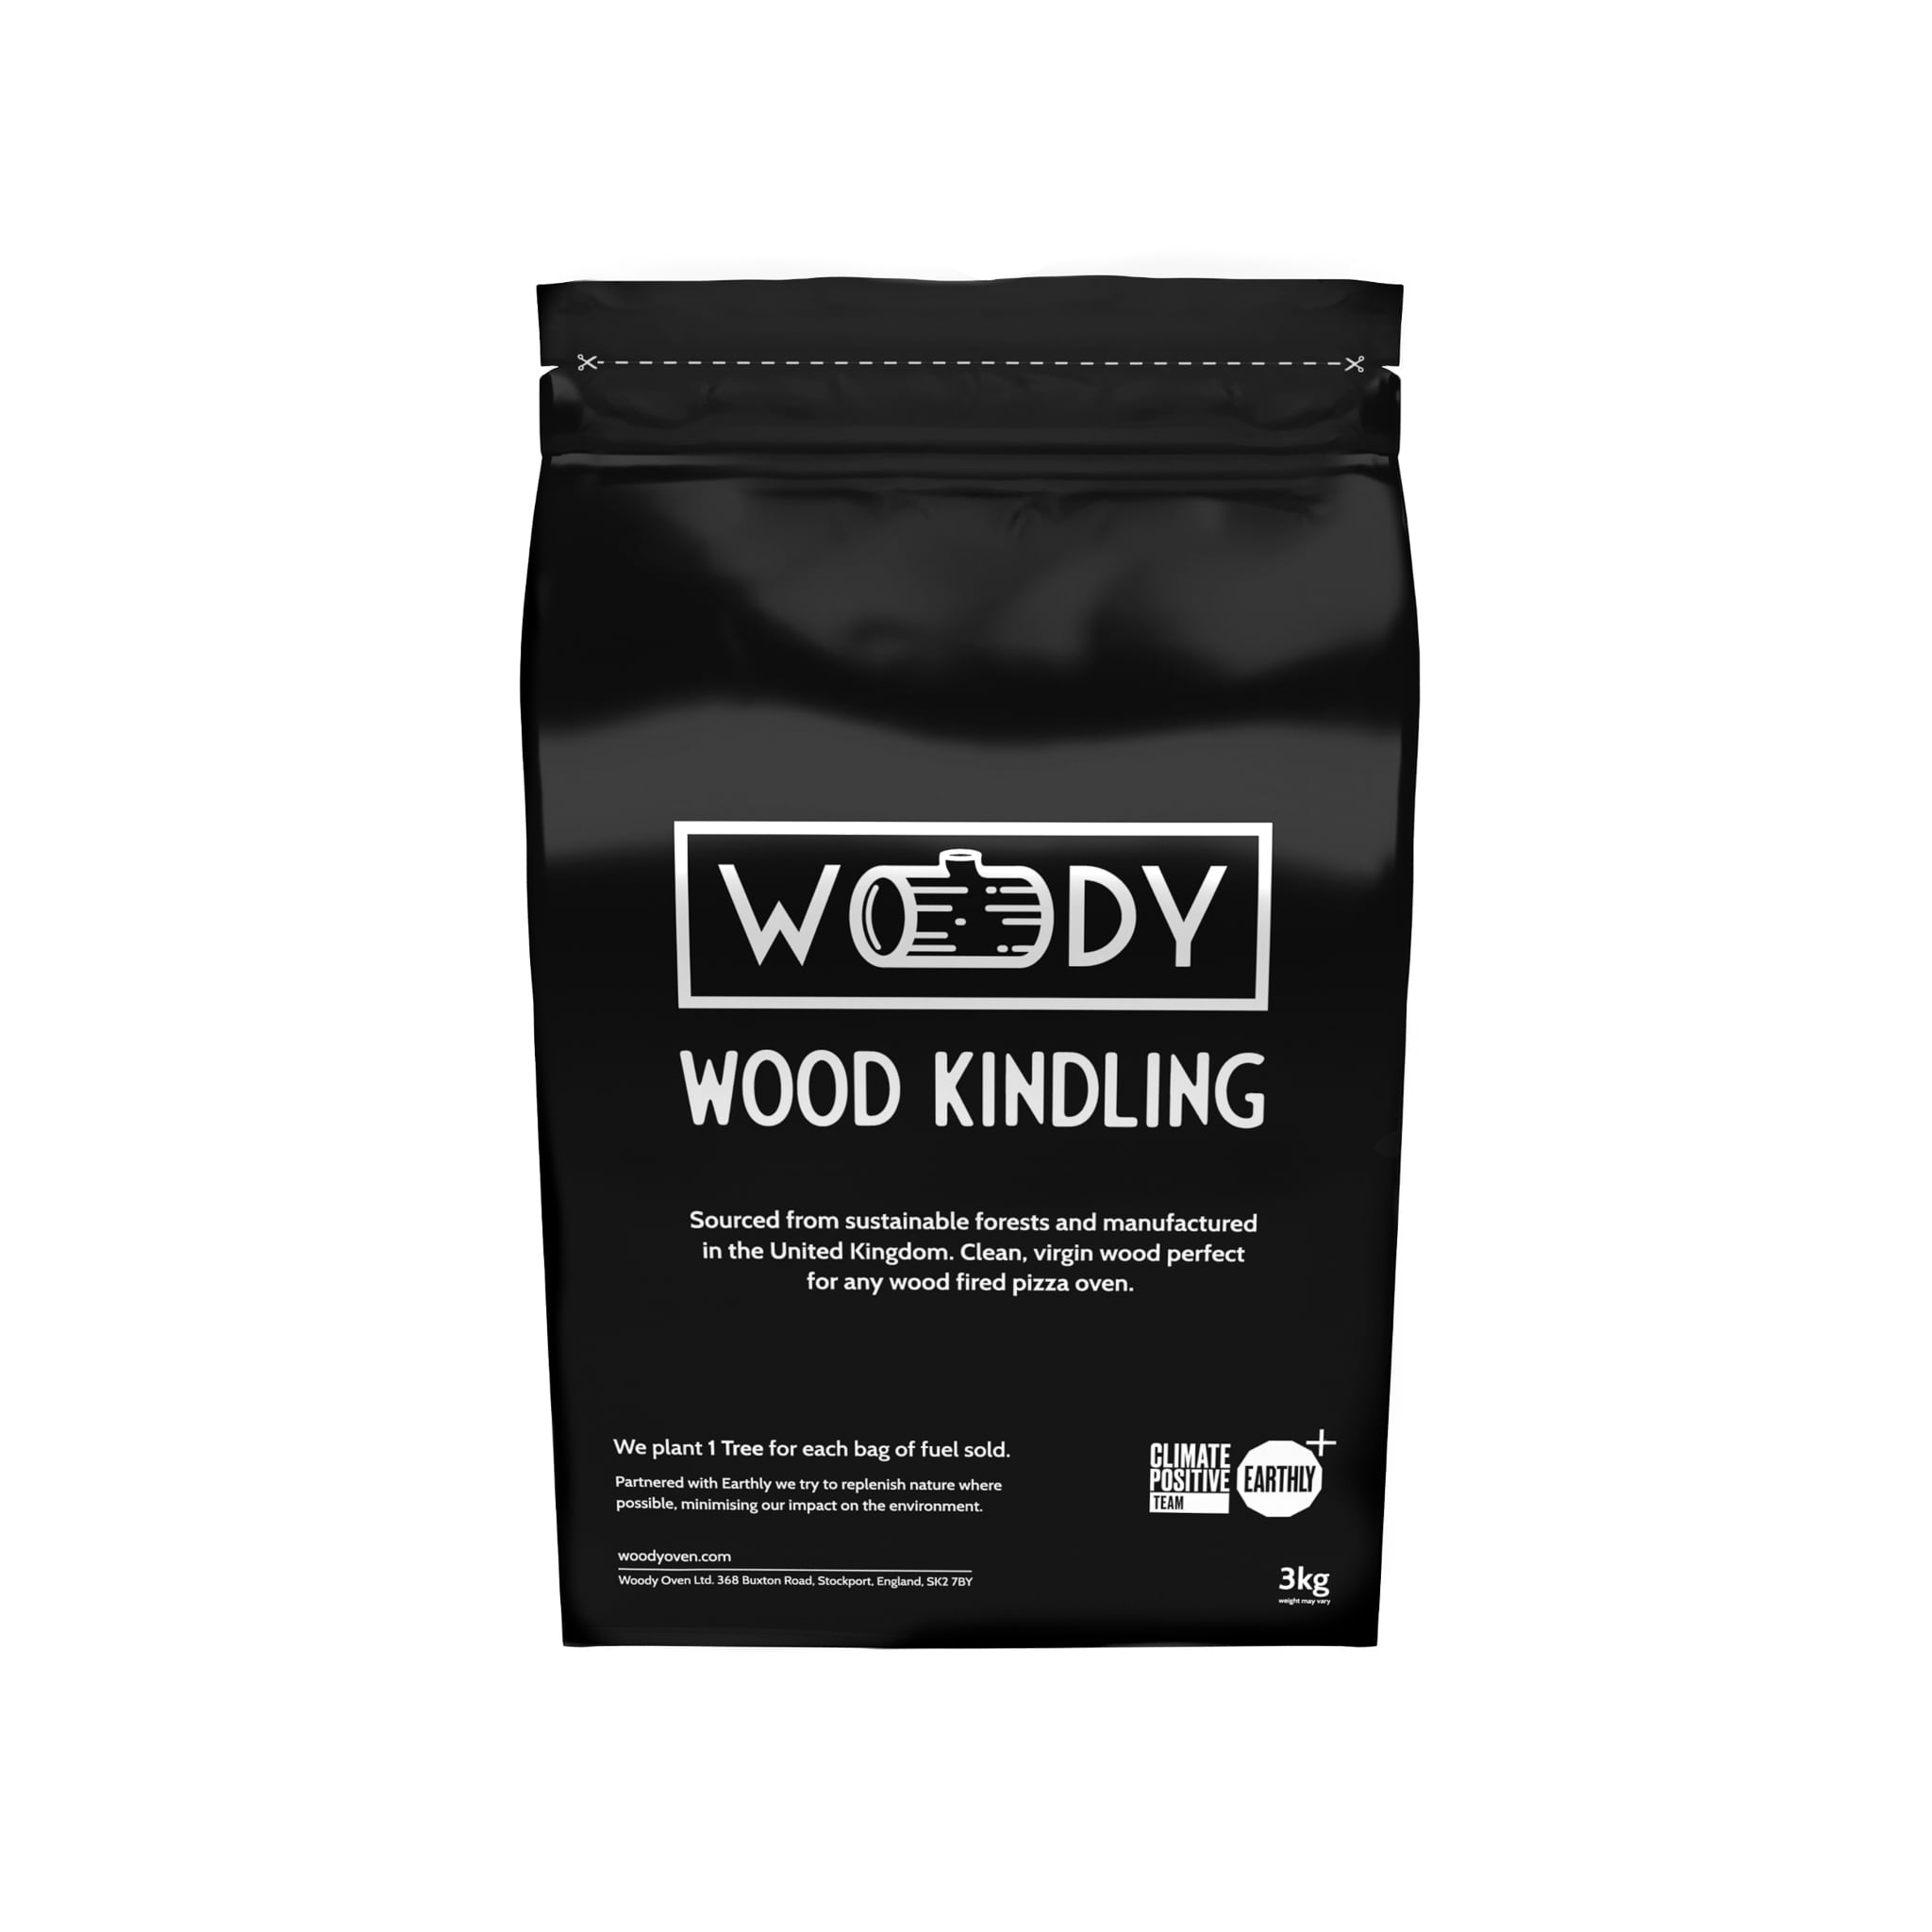 Woody Wood Kindling, 3kg